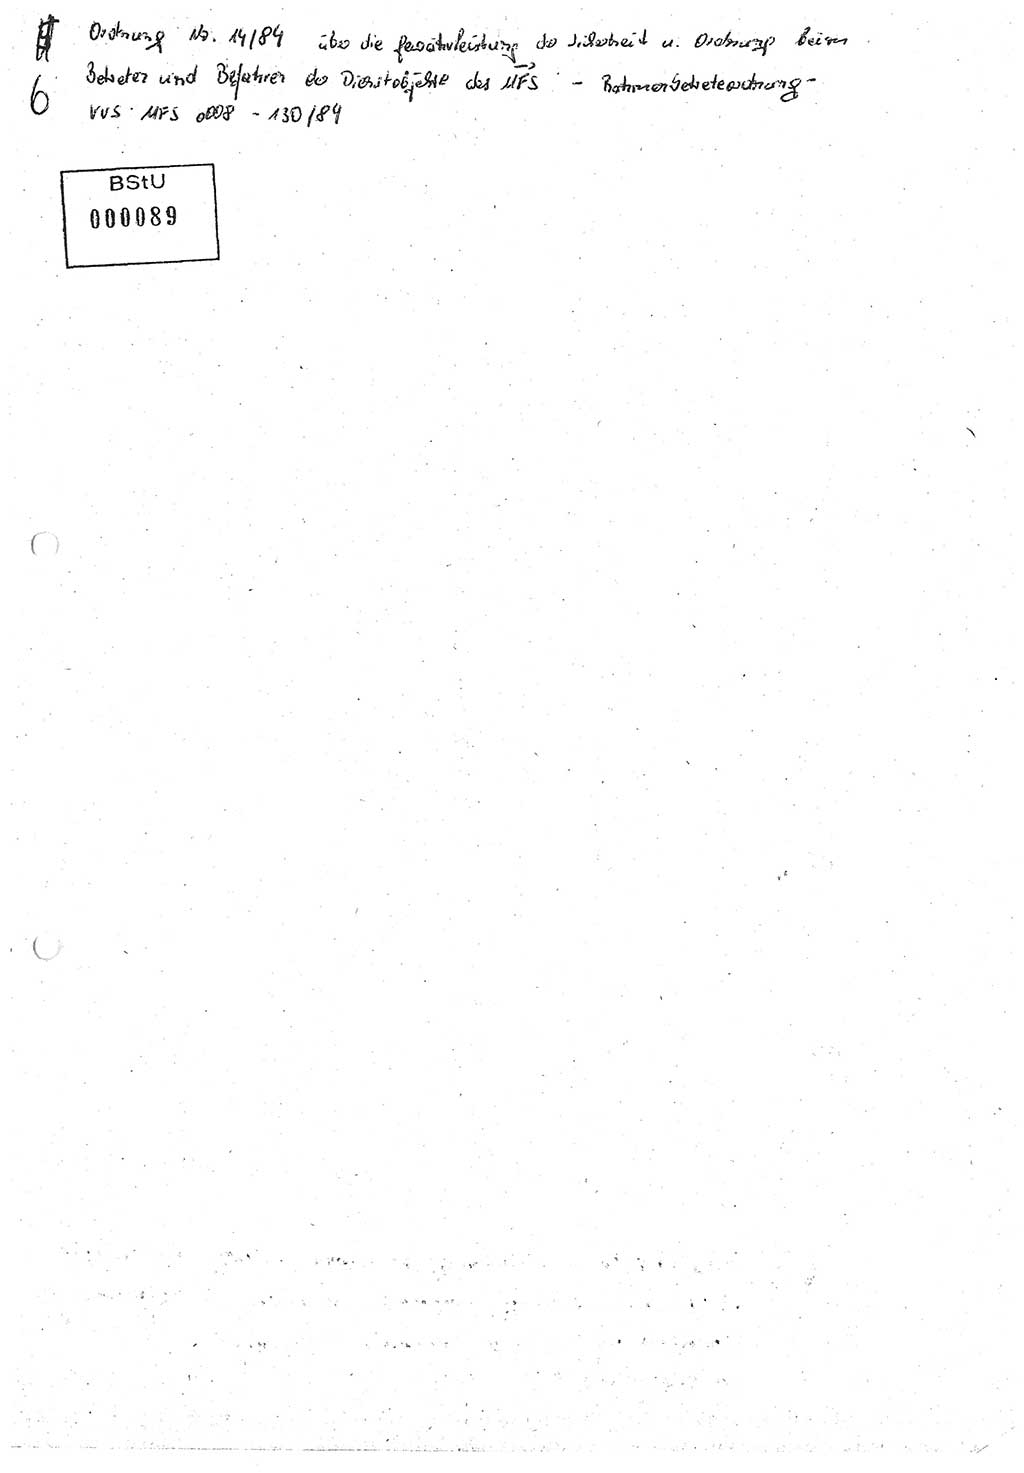 Diplomarbeit (Entwurf) Oberleutnant Peter Parke (Abt. ⅩⅣ), Ministerium für Staatssicherheit (MfS) [Deutsche Demokratische Republik (DDR)], Juristische Hochschule (JHS), Geheime Verschlußsache (GVS) o001-98/86, Potsdam 1986, Seite 88 (Dipl.-Arb. MfS DDR JHS GVS o001-98/86 1986, S. 88)